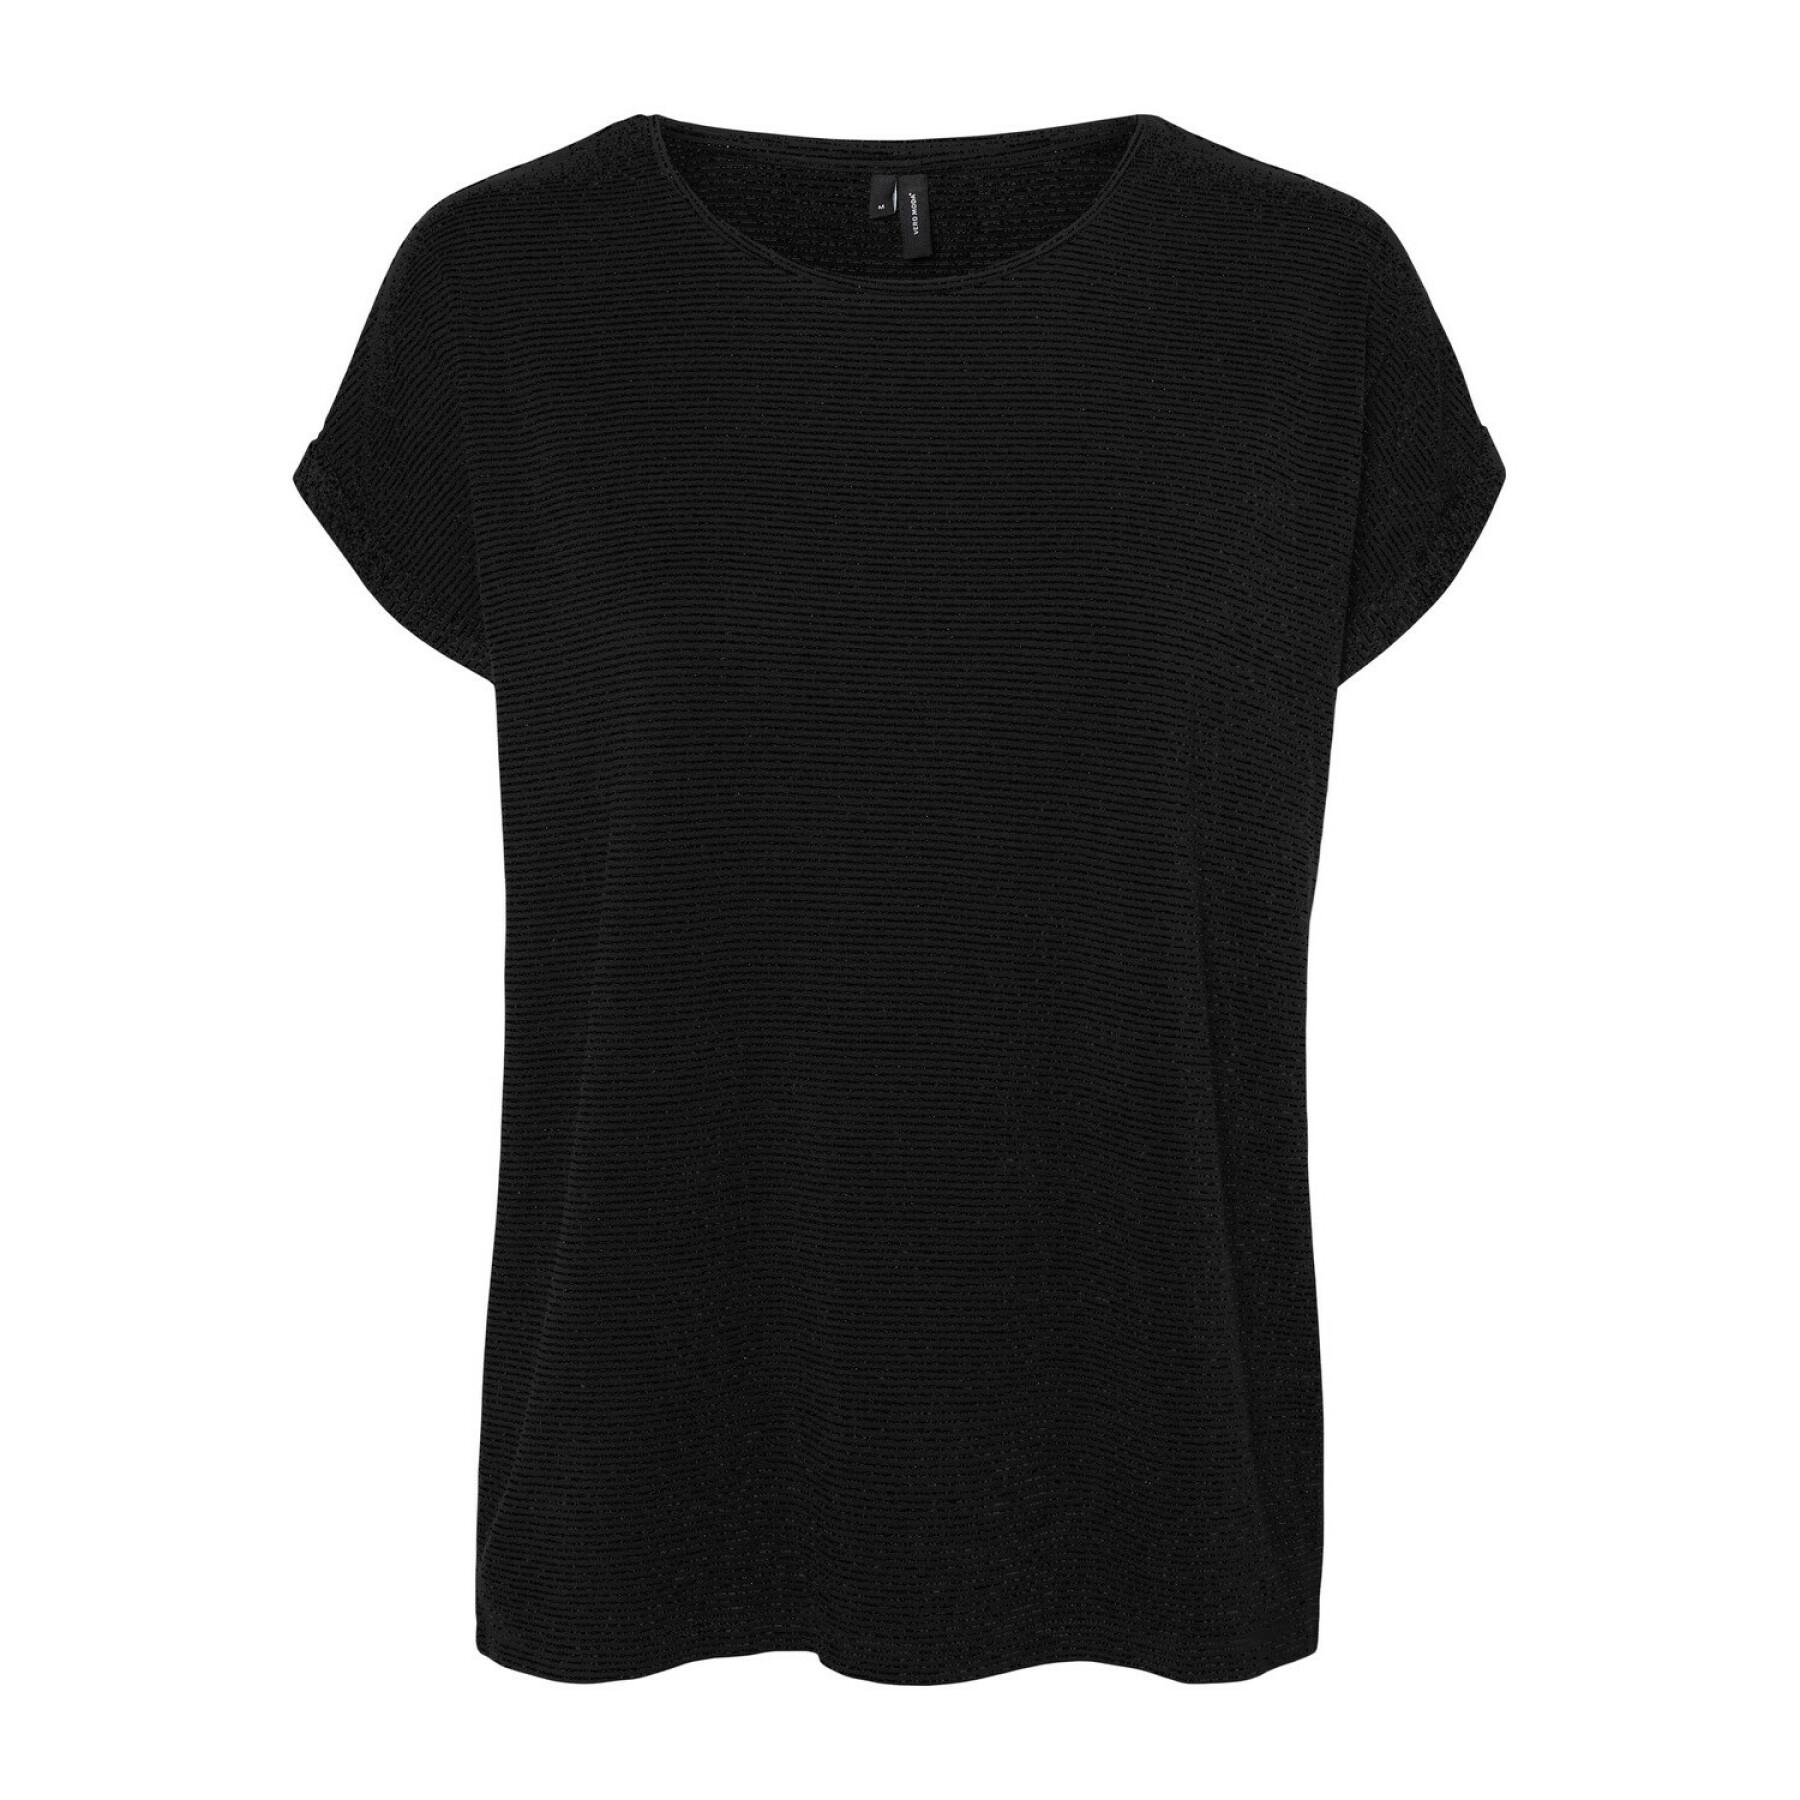 Women's T-shirt Vero Moda vmlava plain lurex